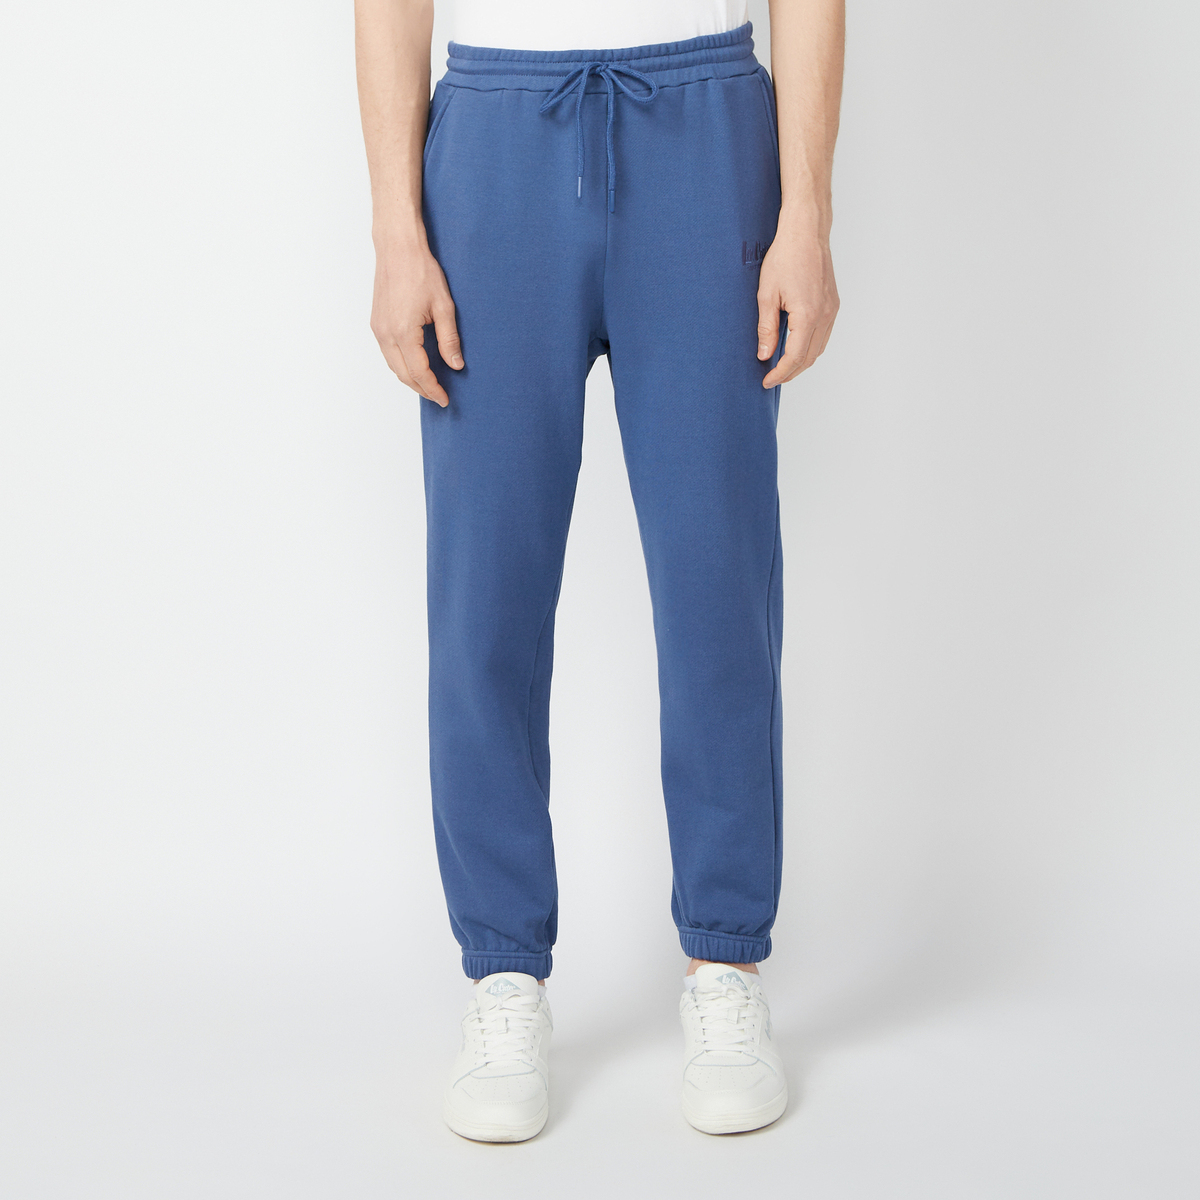 Спортивные брюки мужские Lee cooper LC-SWP-337MSS синие XL